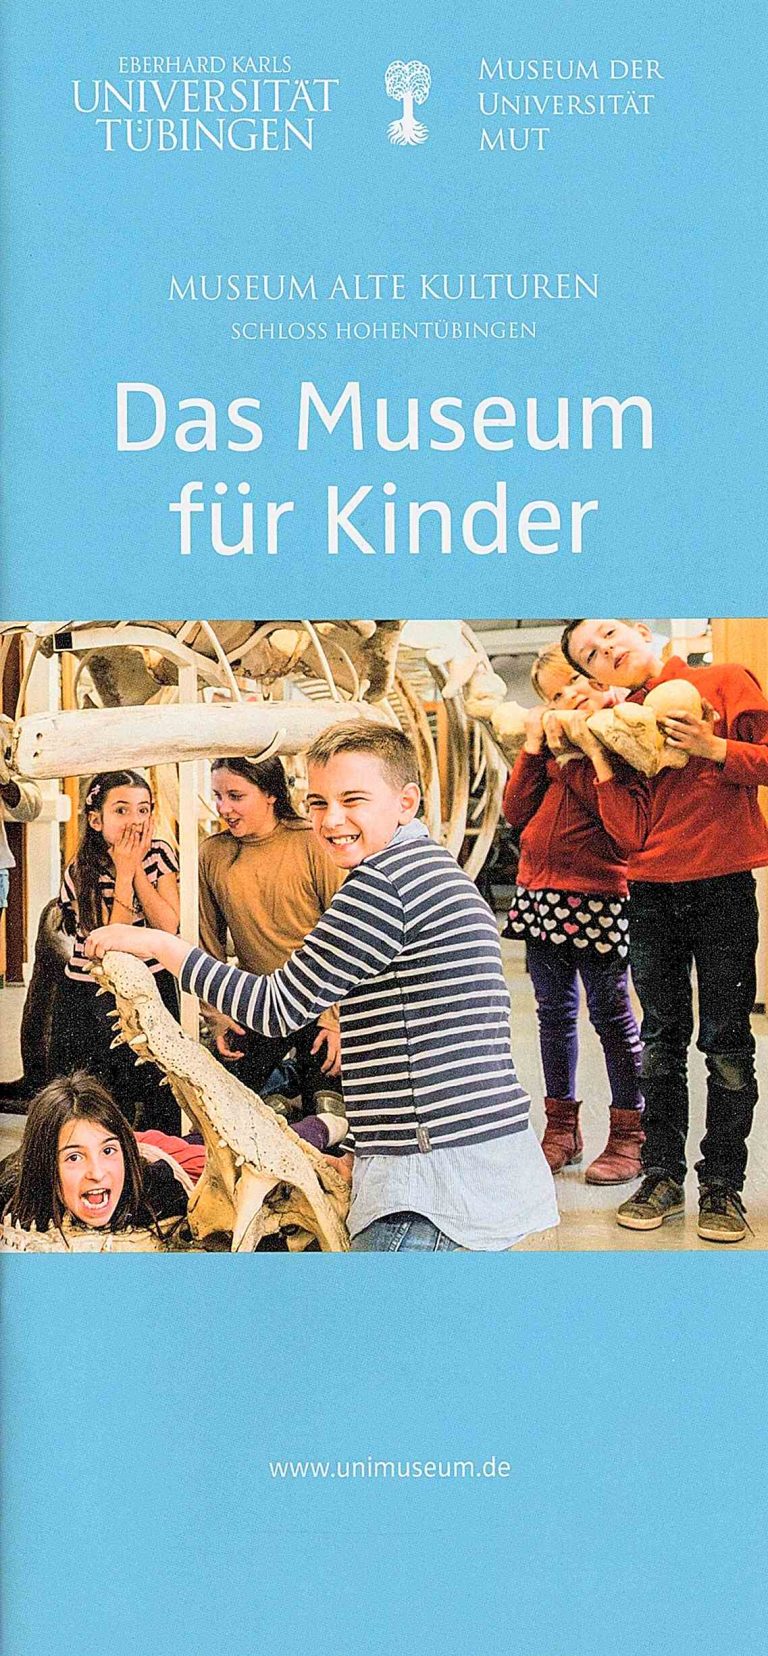 Museum fuer Kinder Tuebingen 01 768x1656